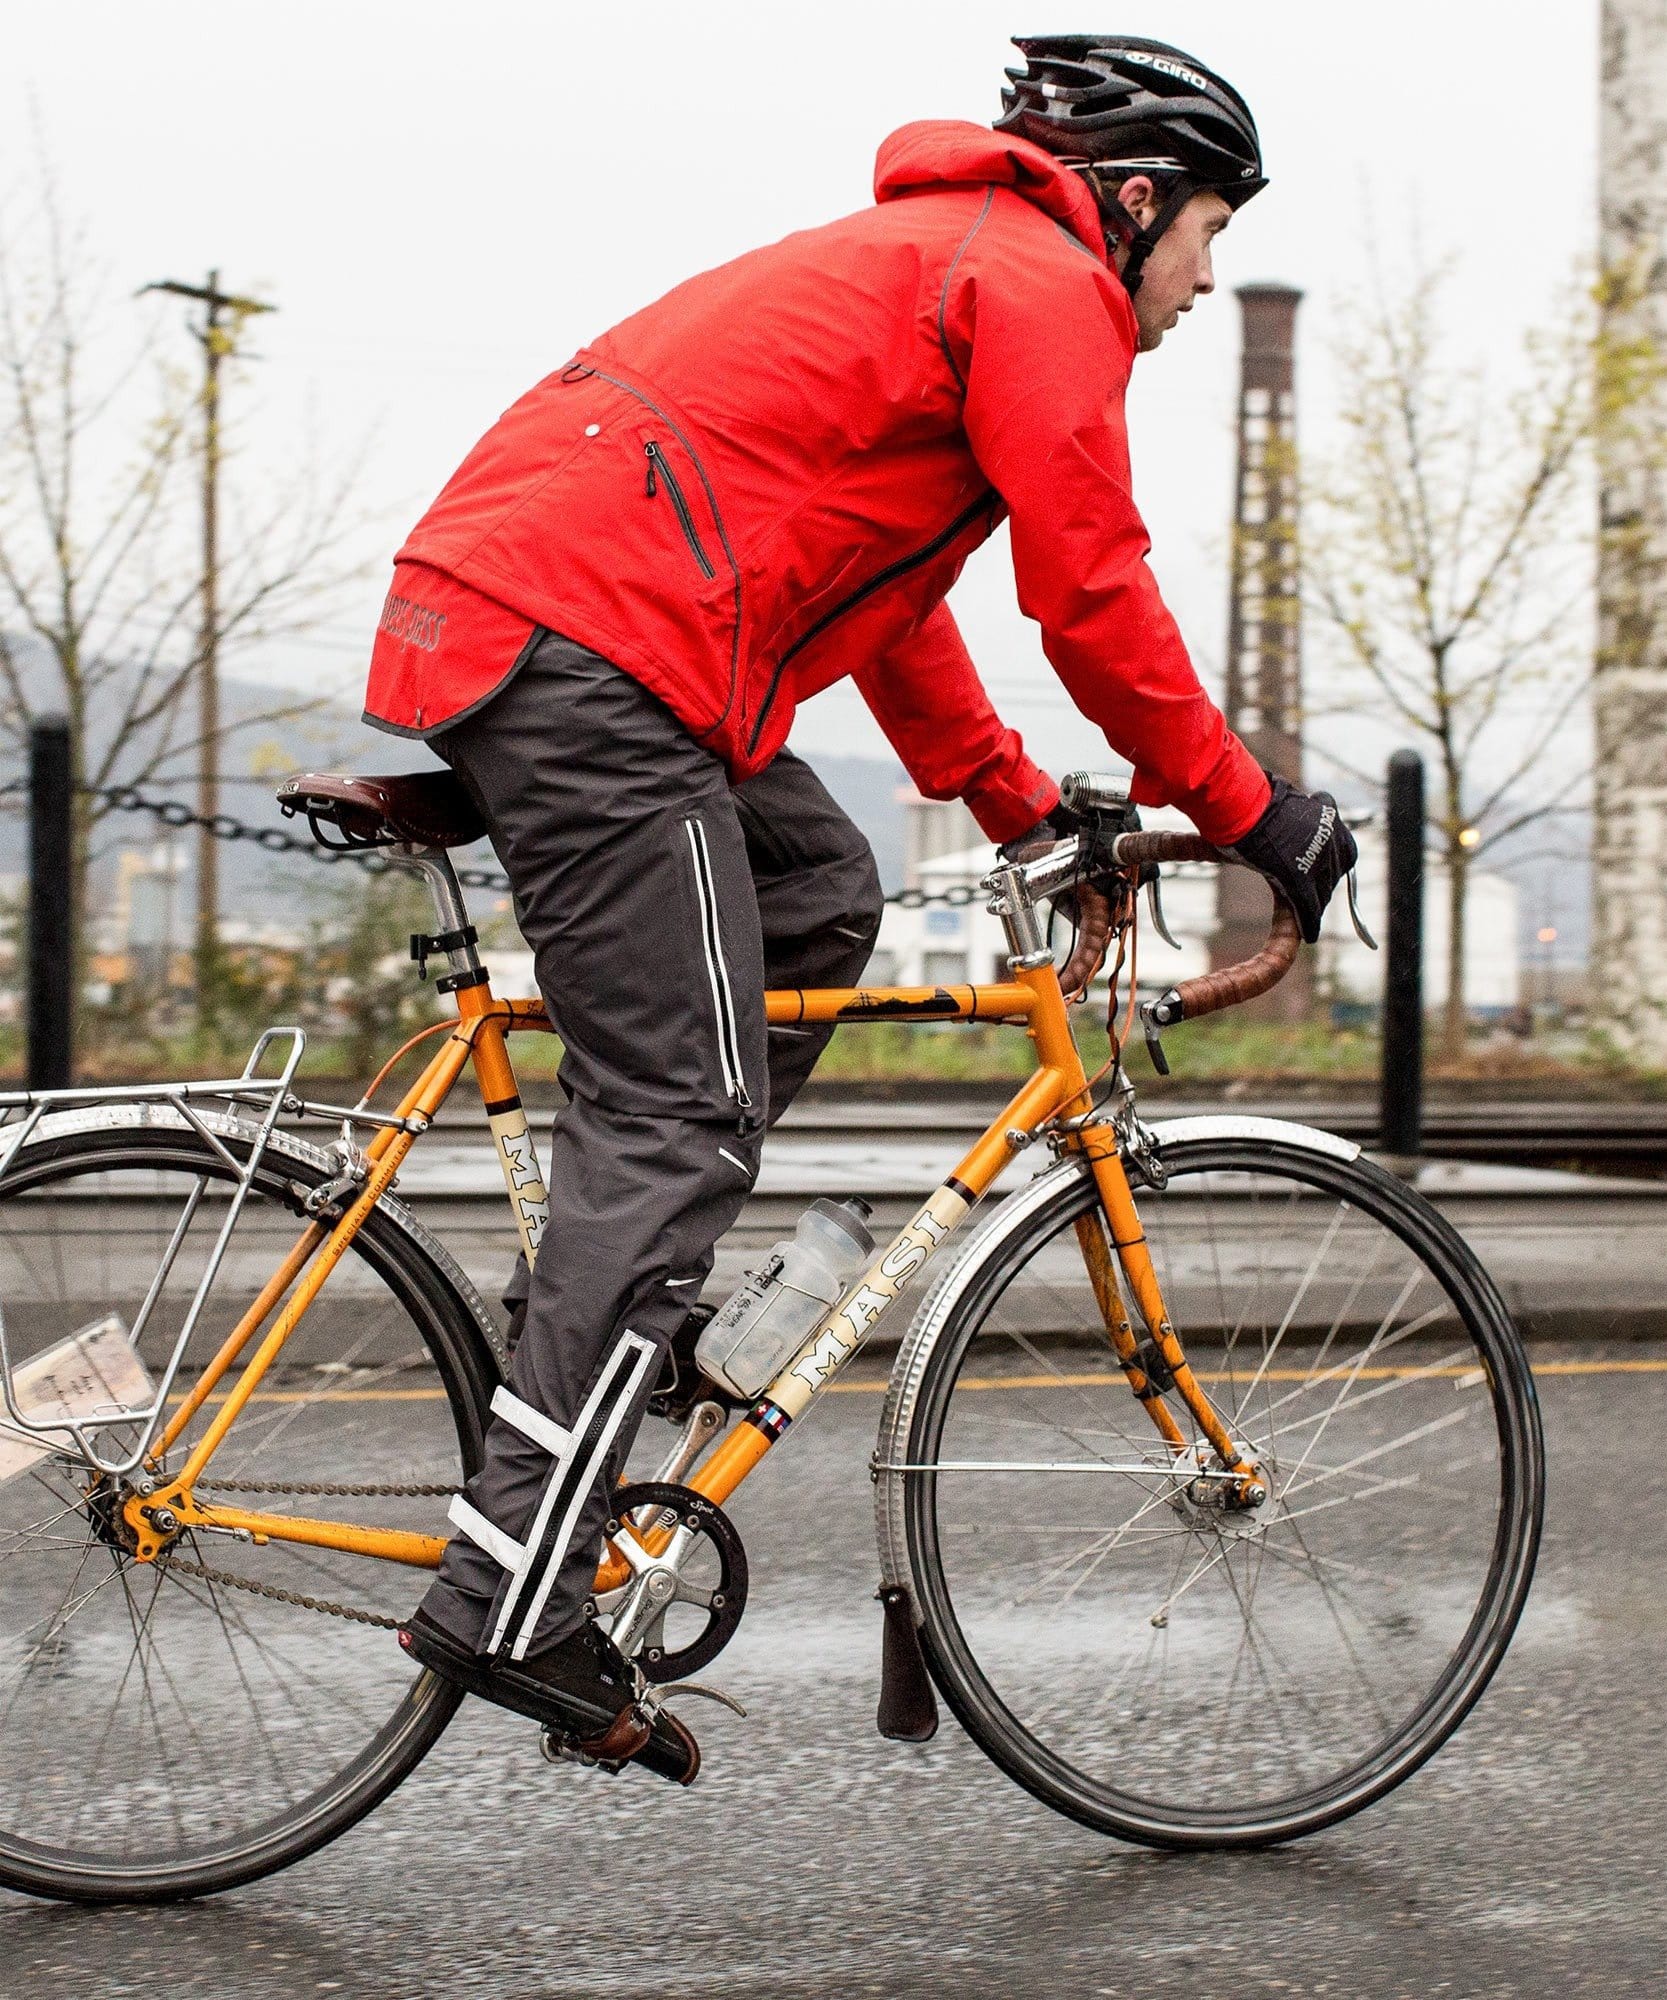 rain pants for bike commuting